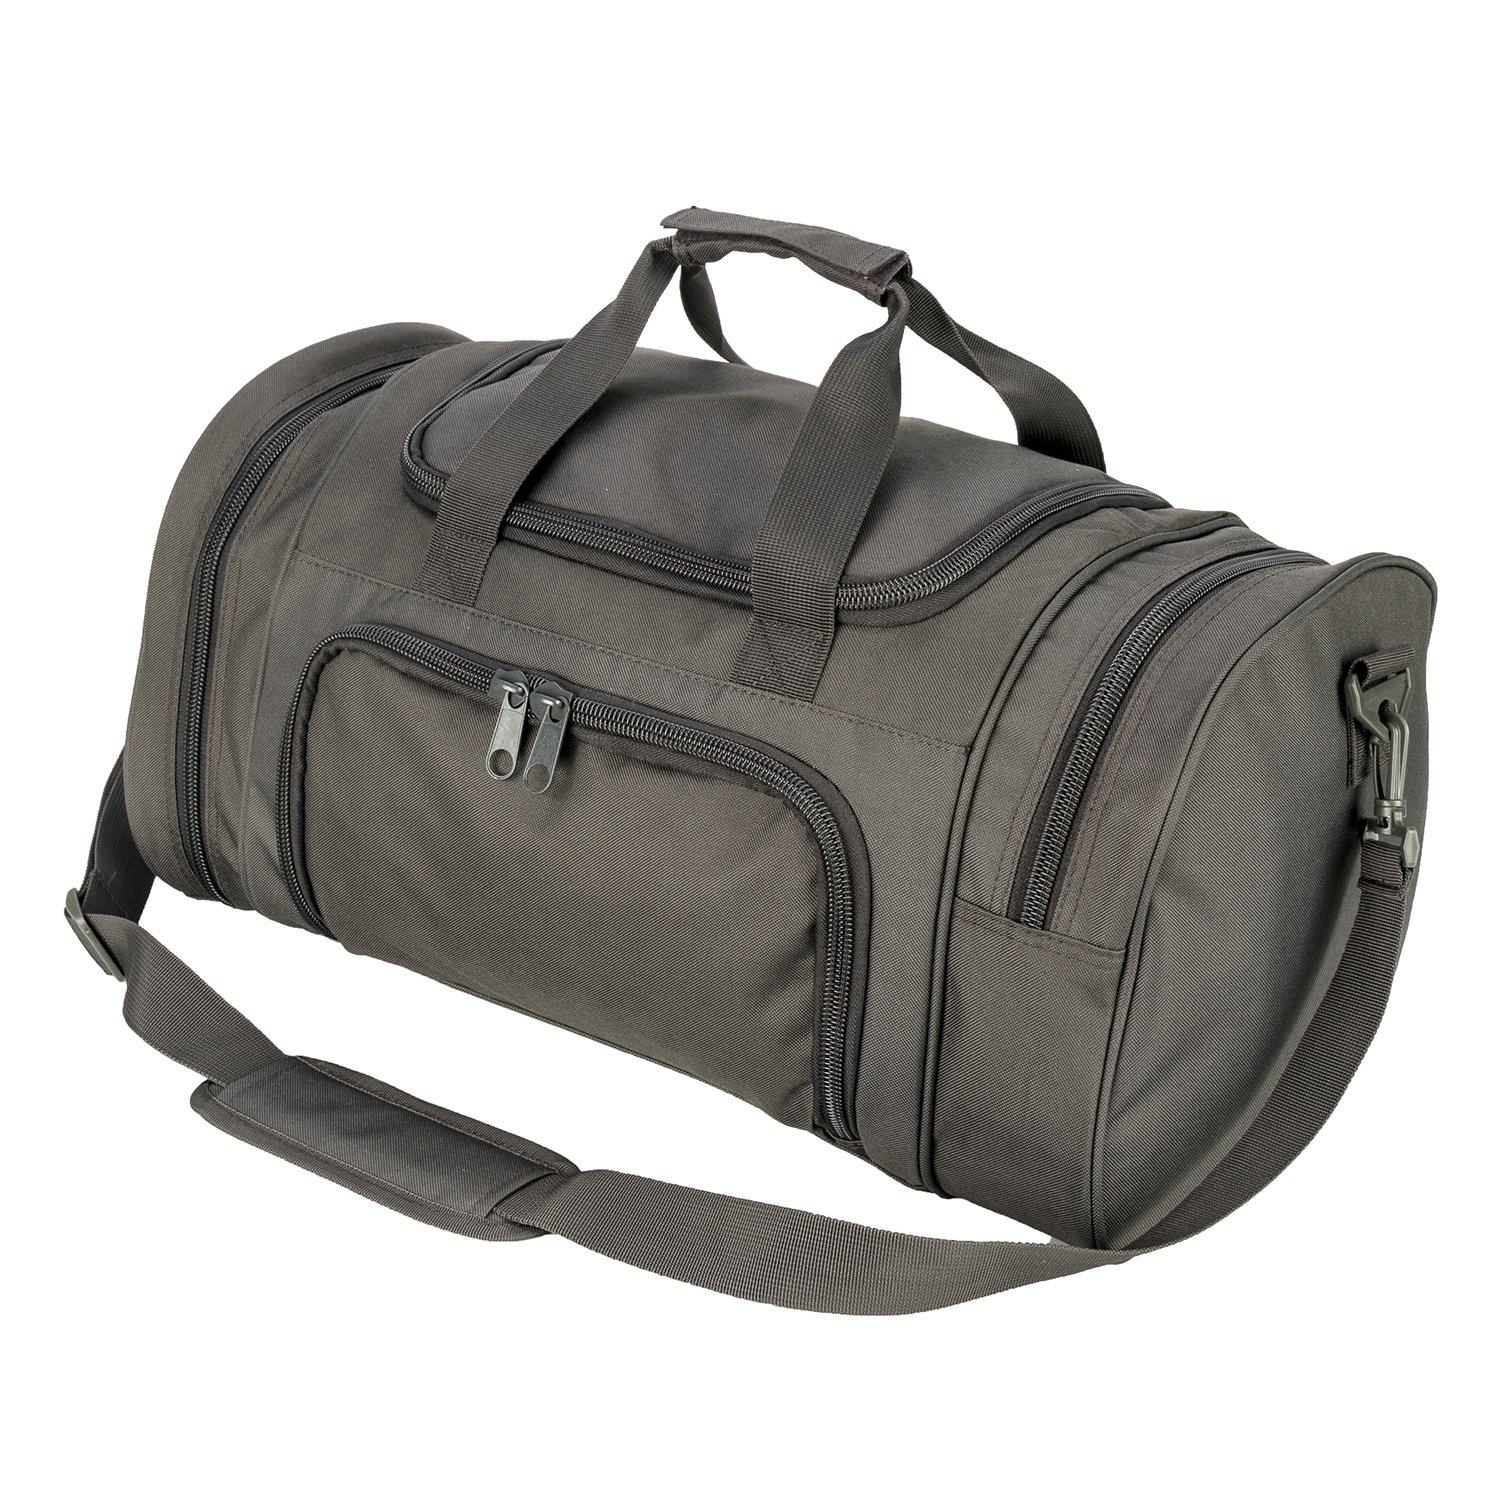 Extra große Sporttasche mit verstellbarem Riemen im Retro-Stil mit Schuhfach für Reisen, Yoga, Outdoor-Sporttasche